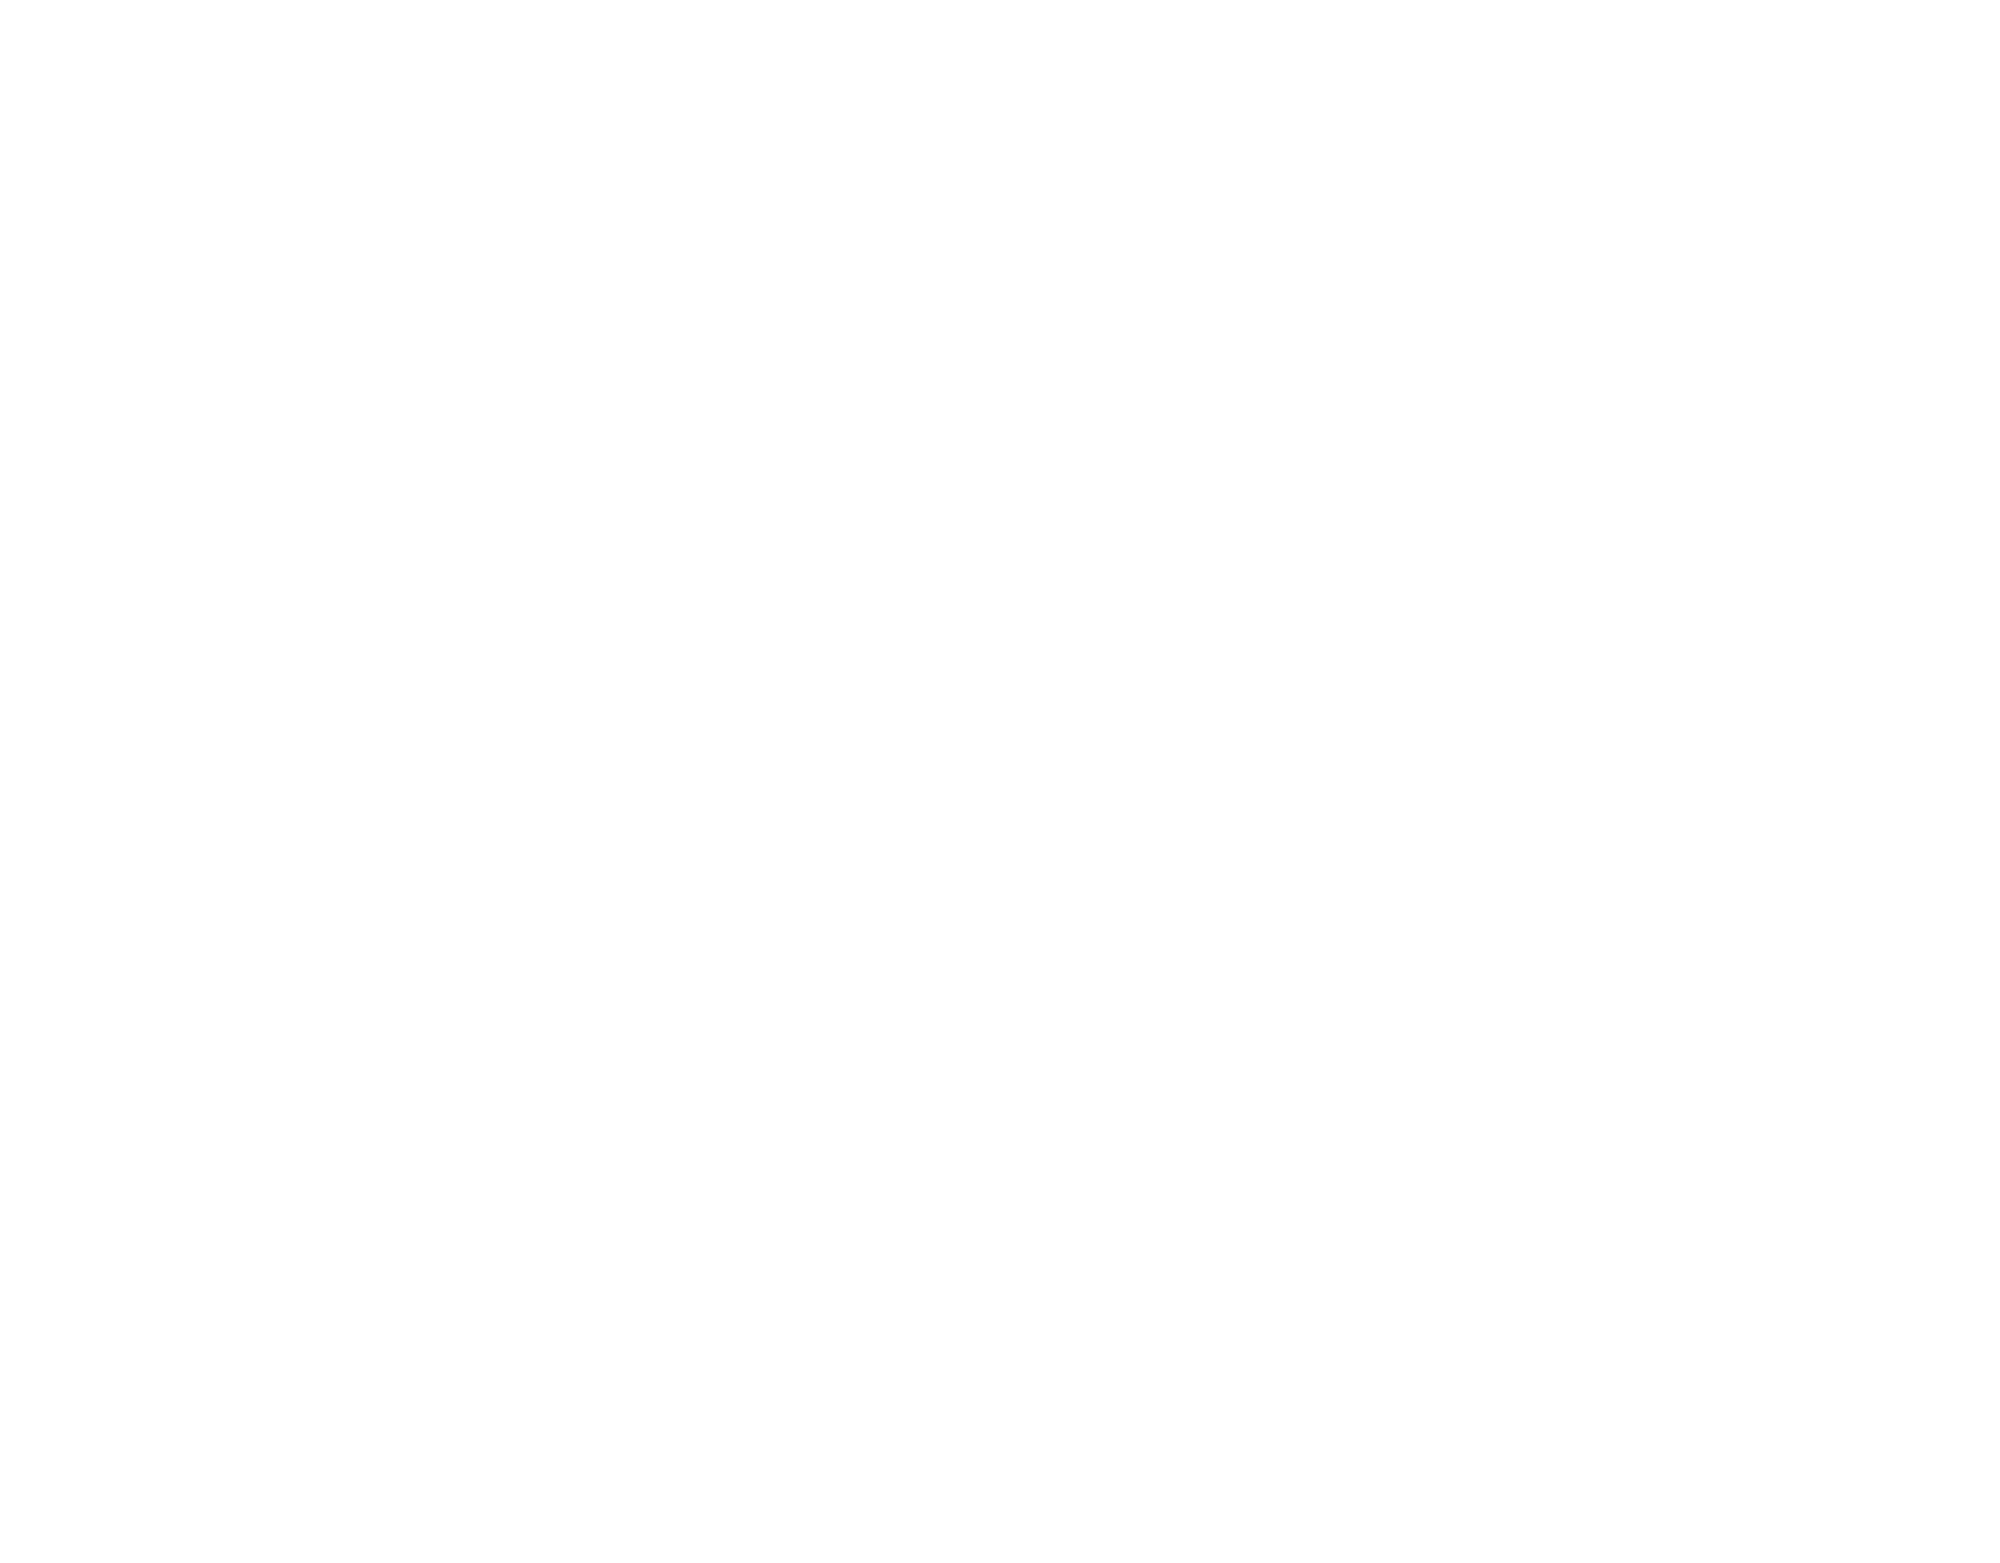 Hansen Cold Storage Construction